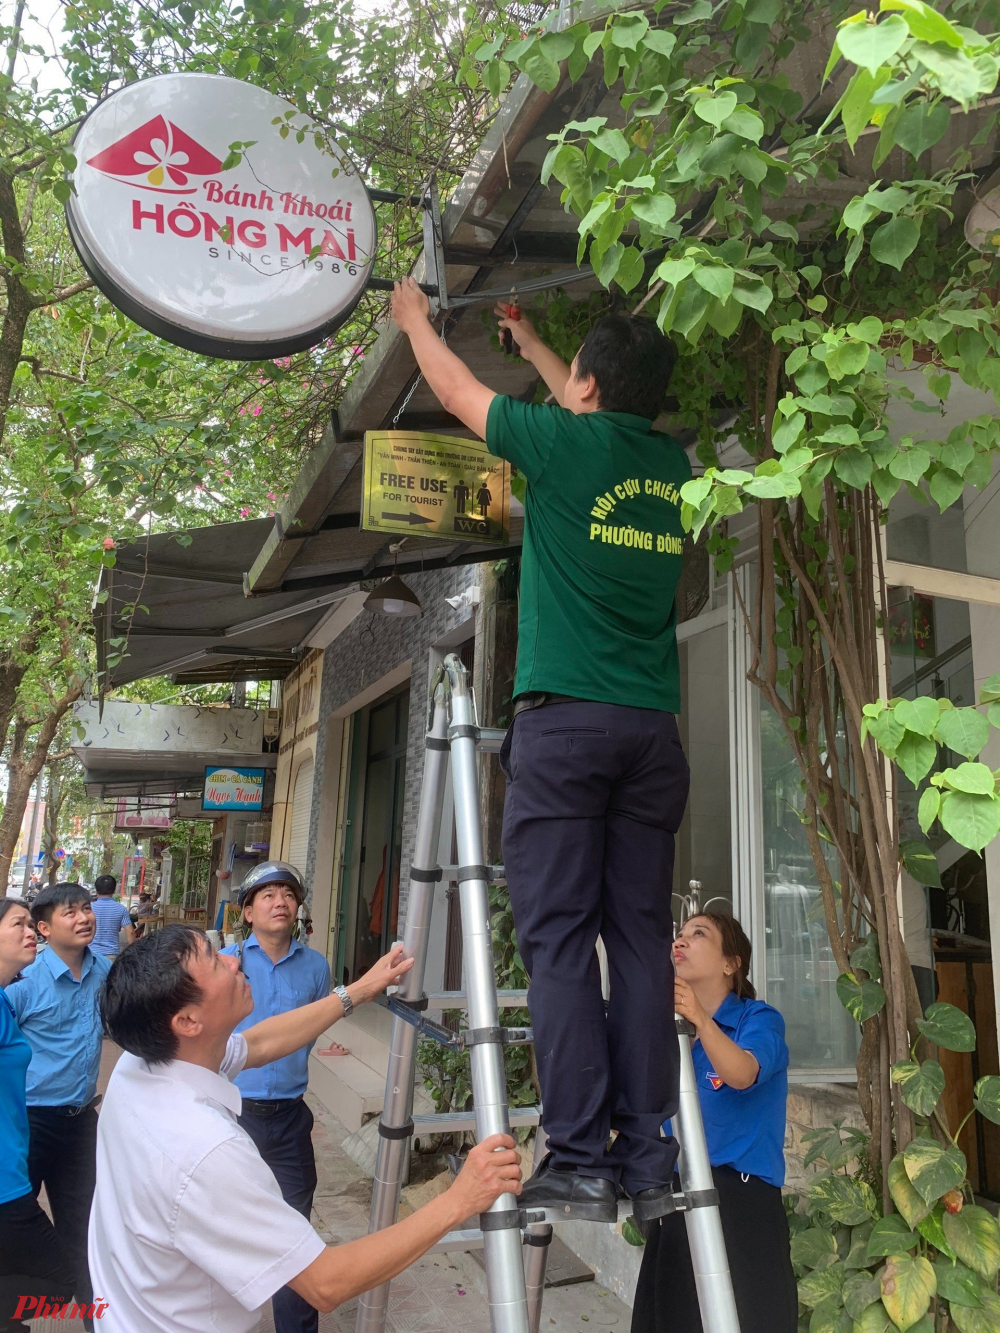 Người dân và các cơ sở kinh doanh cùng chung tay hỗ trợ nhà vệ sinh miễn phí cho khách du lịch - Ảnh: Phan Thiên Định